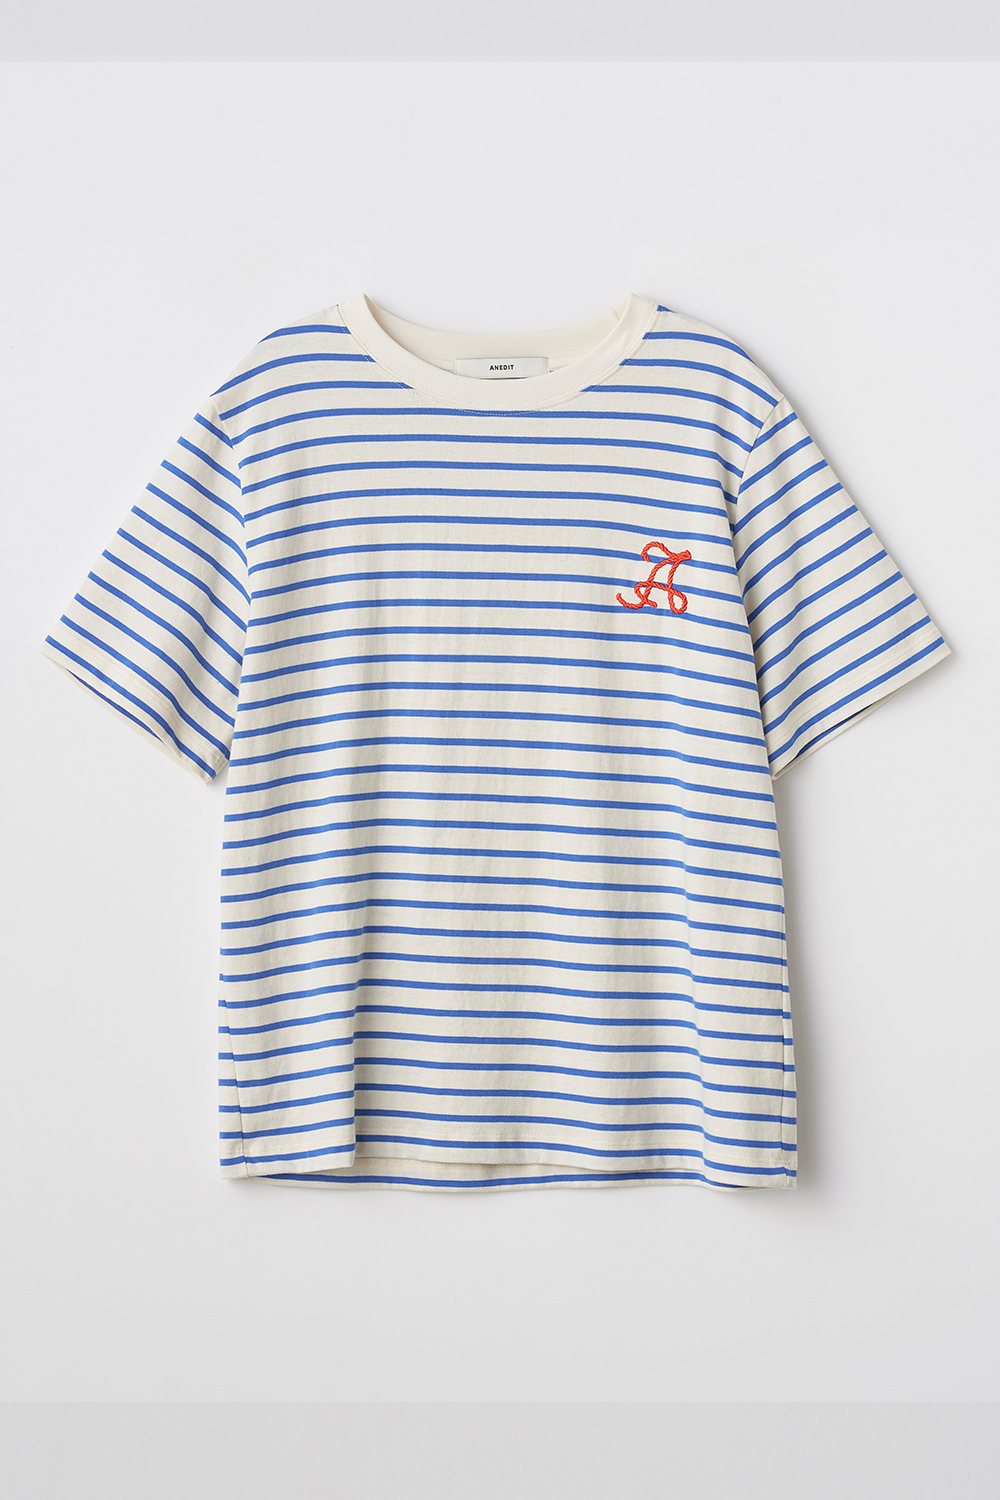 A Stripe Tshirt_CB